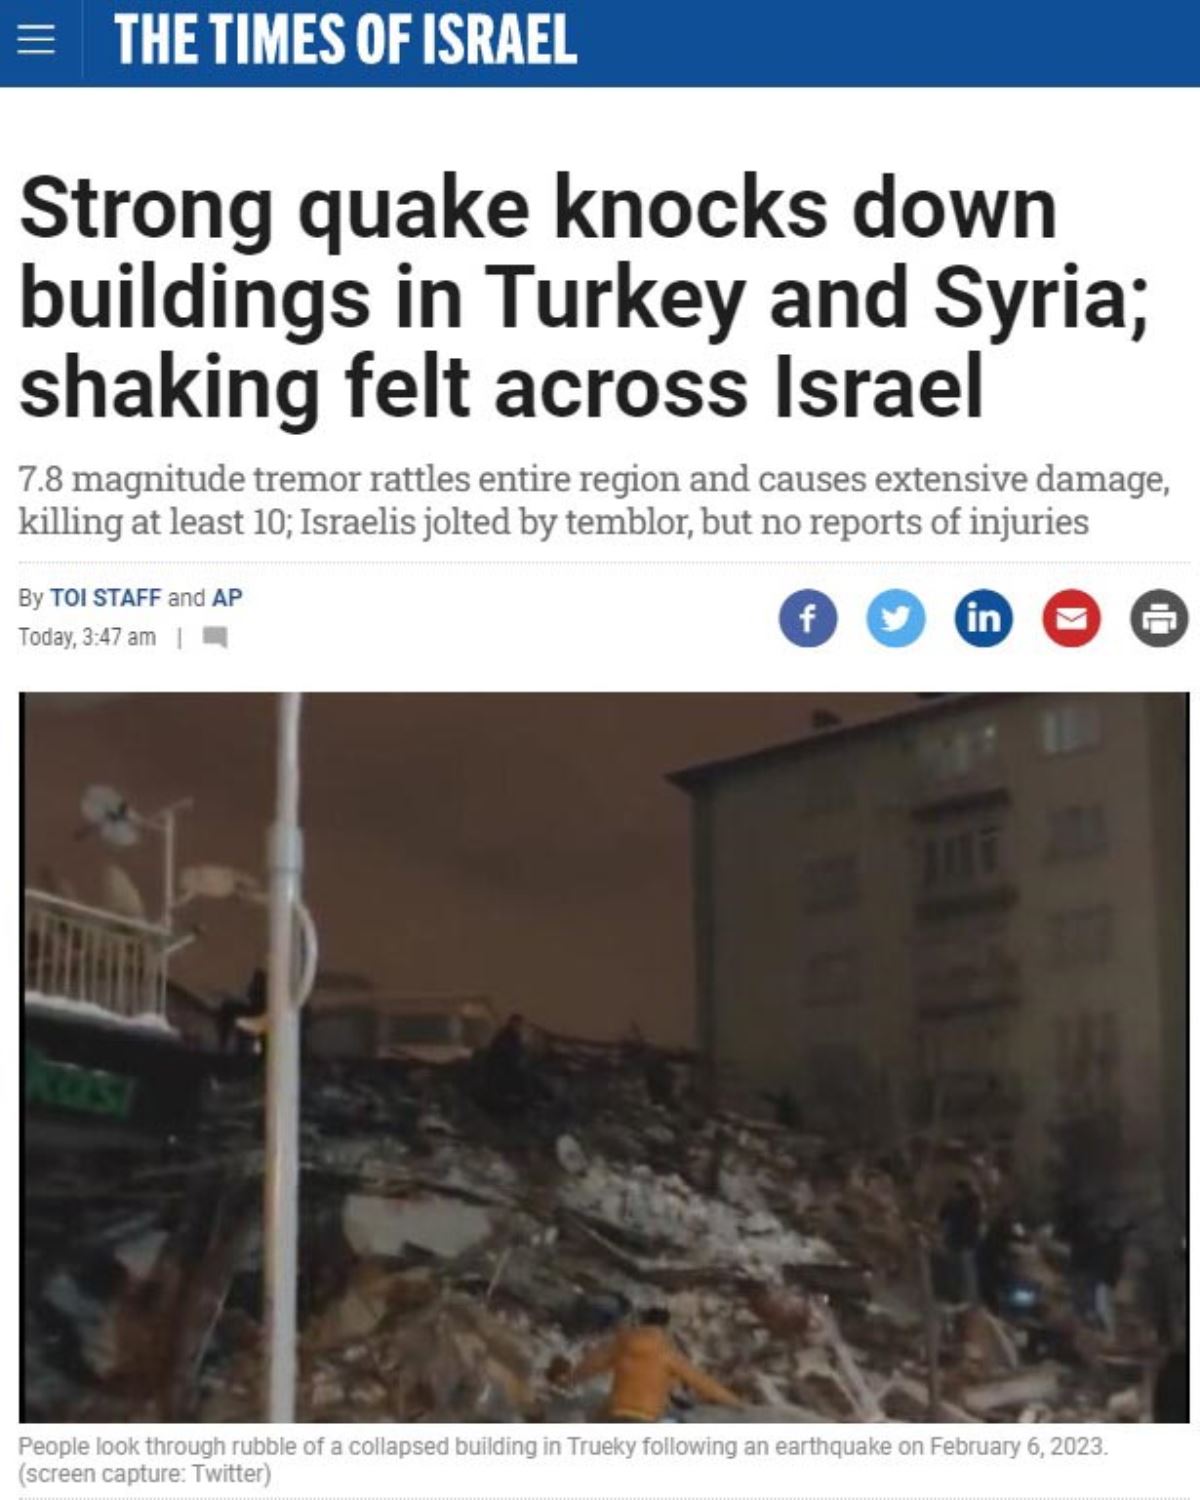 <p>İsrail basını, 7,8 büyüklüğündeki sarsıntının tüm bölgeyi sarstığını, büyük hasara yol açarak en az 100 kişinin canına mal olduğunu, İsrail'in de depremle sarsıldığını, ancak ölüm ya da yaralanma bildirilmediğini duyurdu.</p>